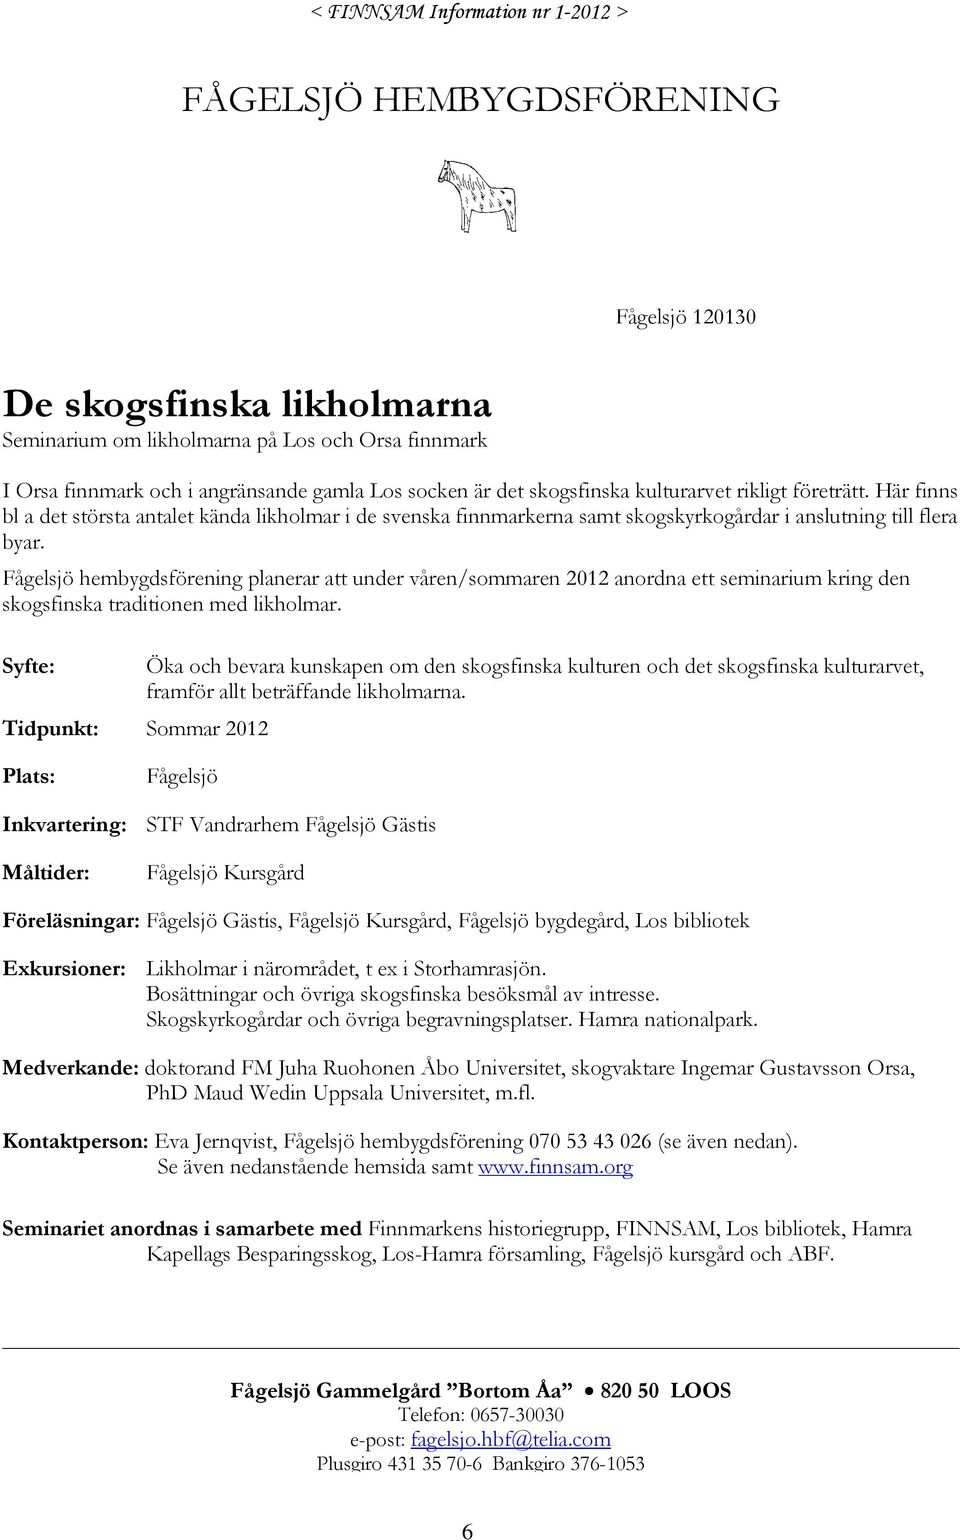 Fågelsjö hembygdsförening planerar att under våren/sommaren 2012 anordna ett seminarium kring den skogsfinska traditionen med likholmar.